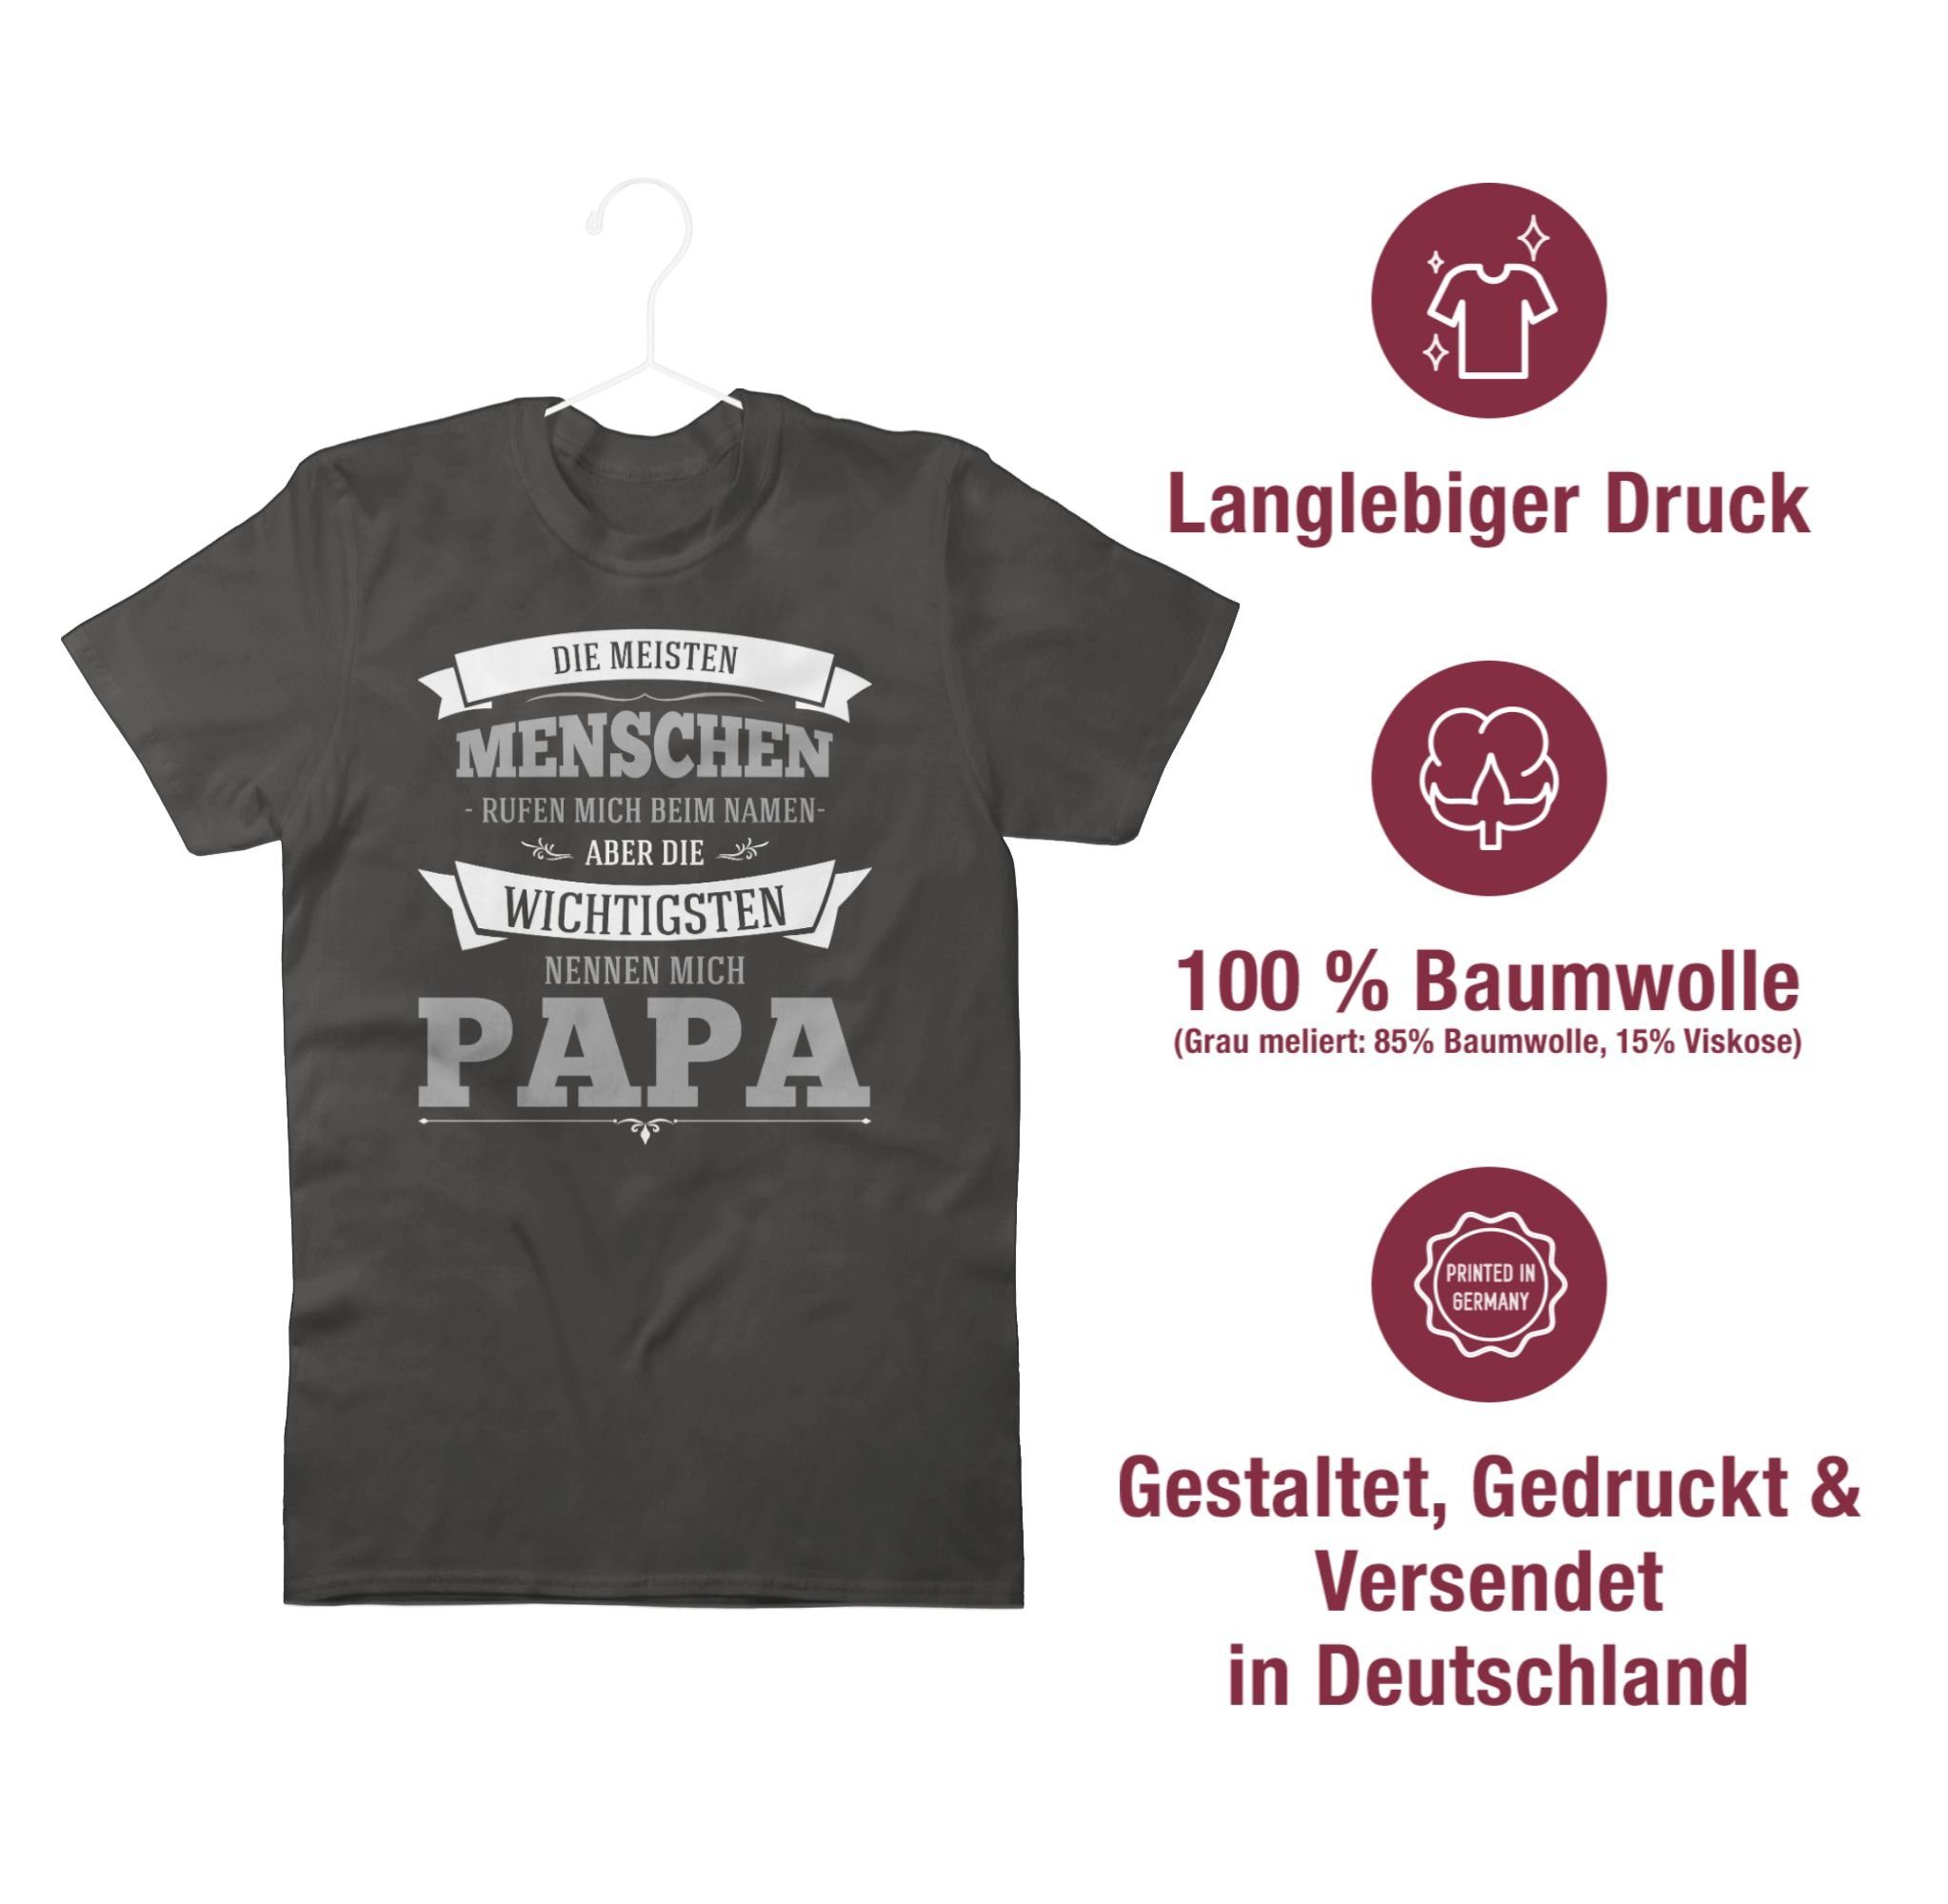 Shirtracer T-Shirt Dunkelgrau Wichtigsten Geschenk Papa Die für Papa grau mich Vatertag nennen 03